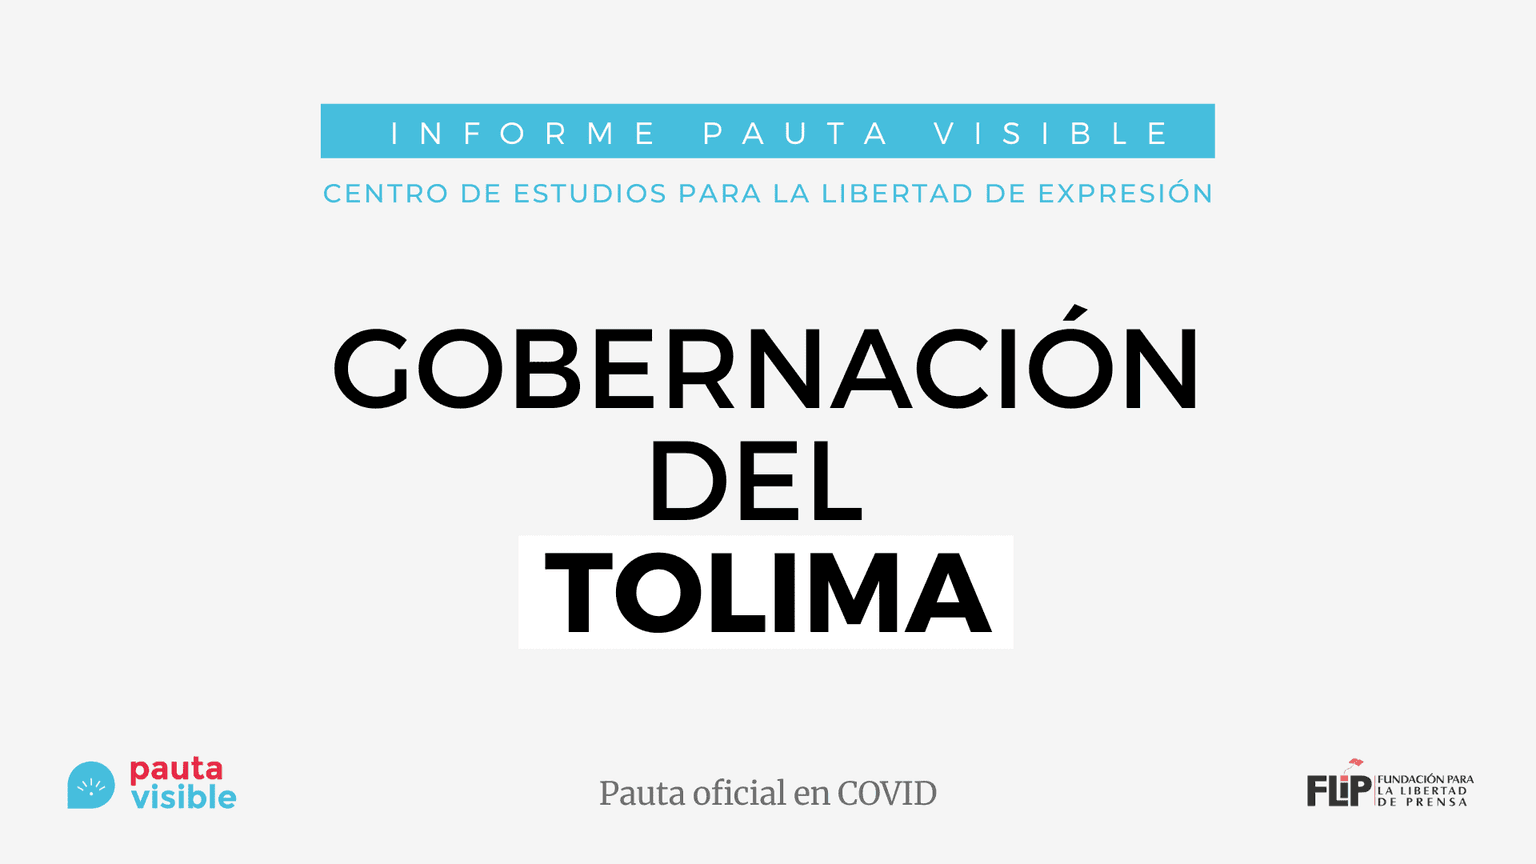 Pauta Oficial en Covid: Gobernación del Tolima